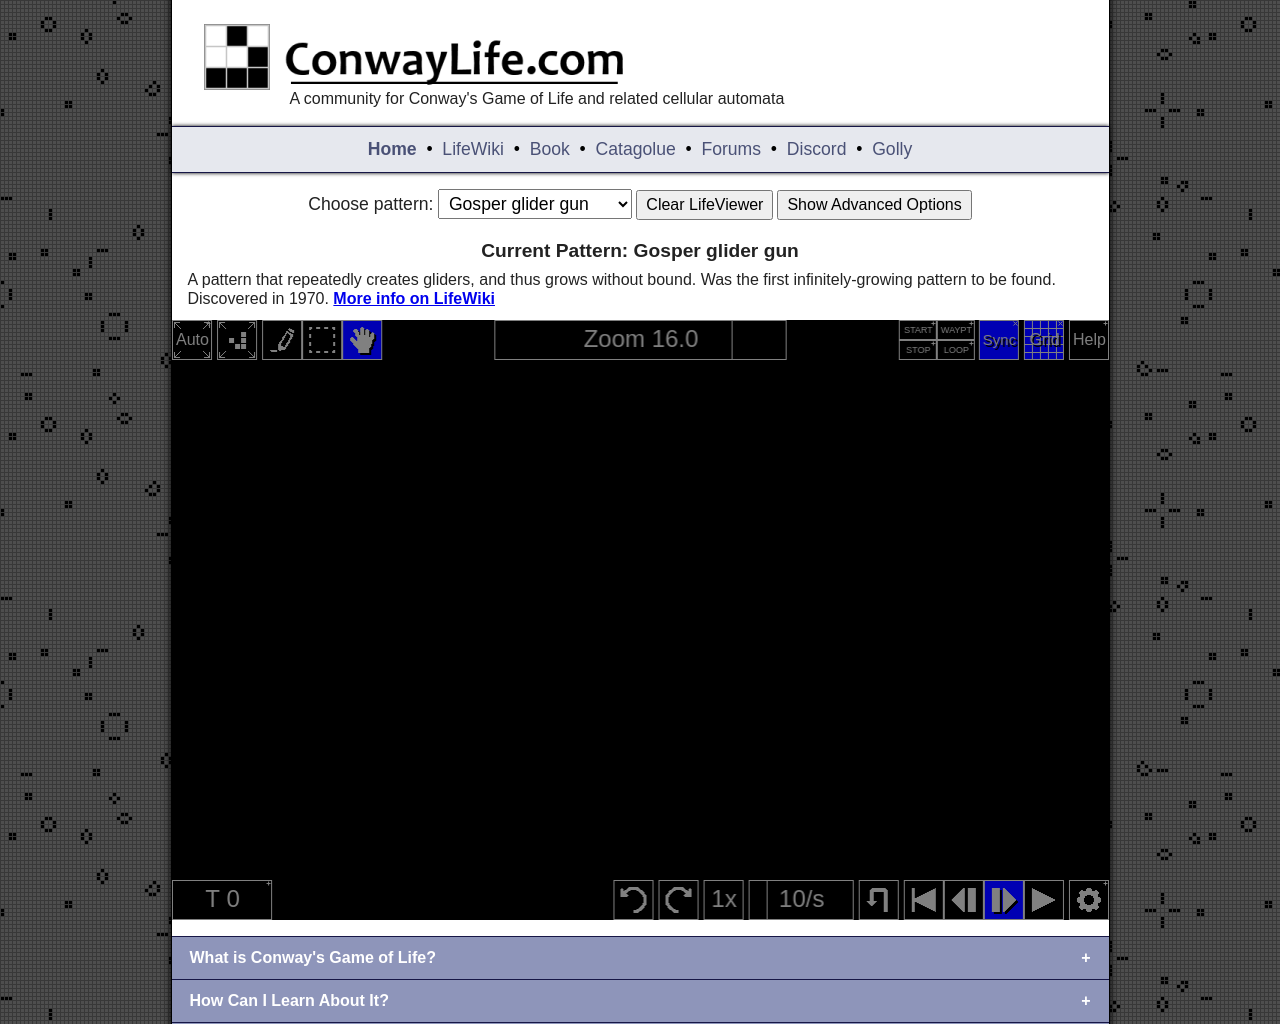 conwaylife.com